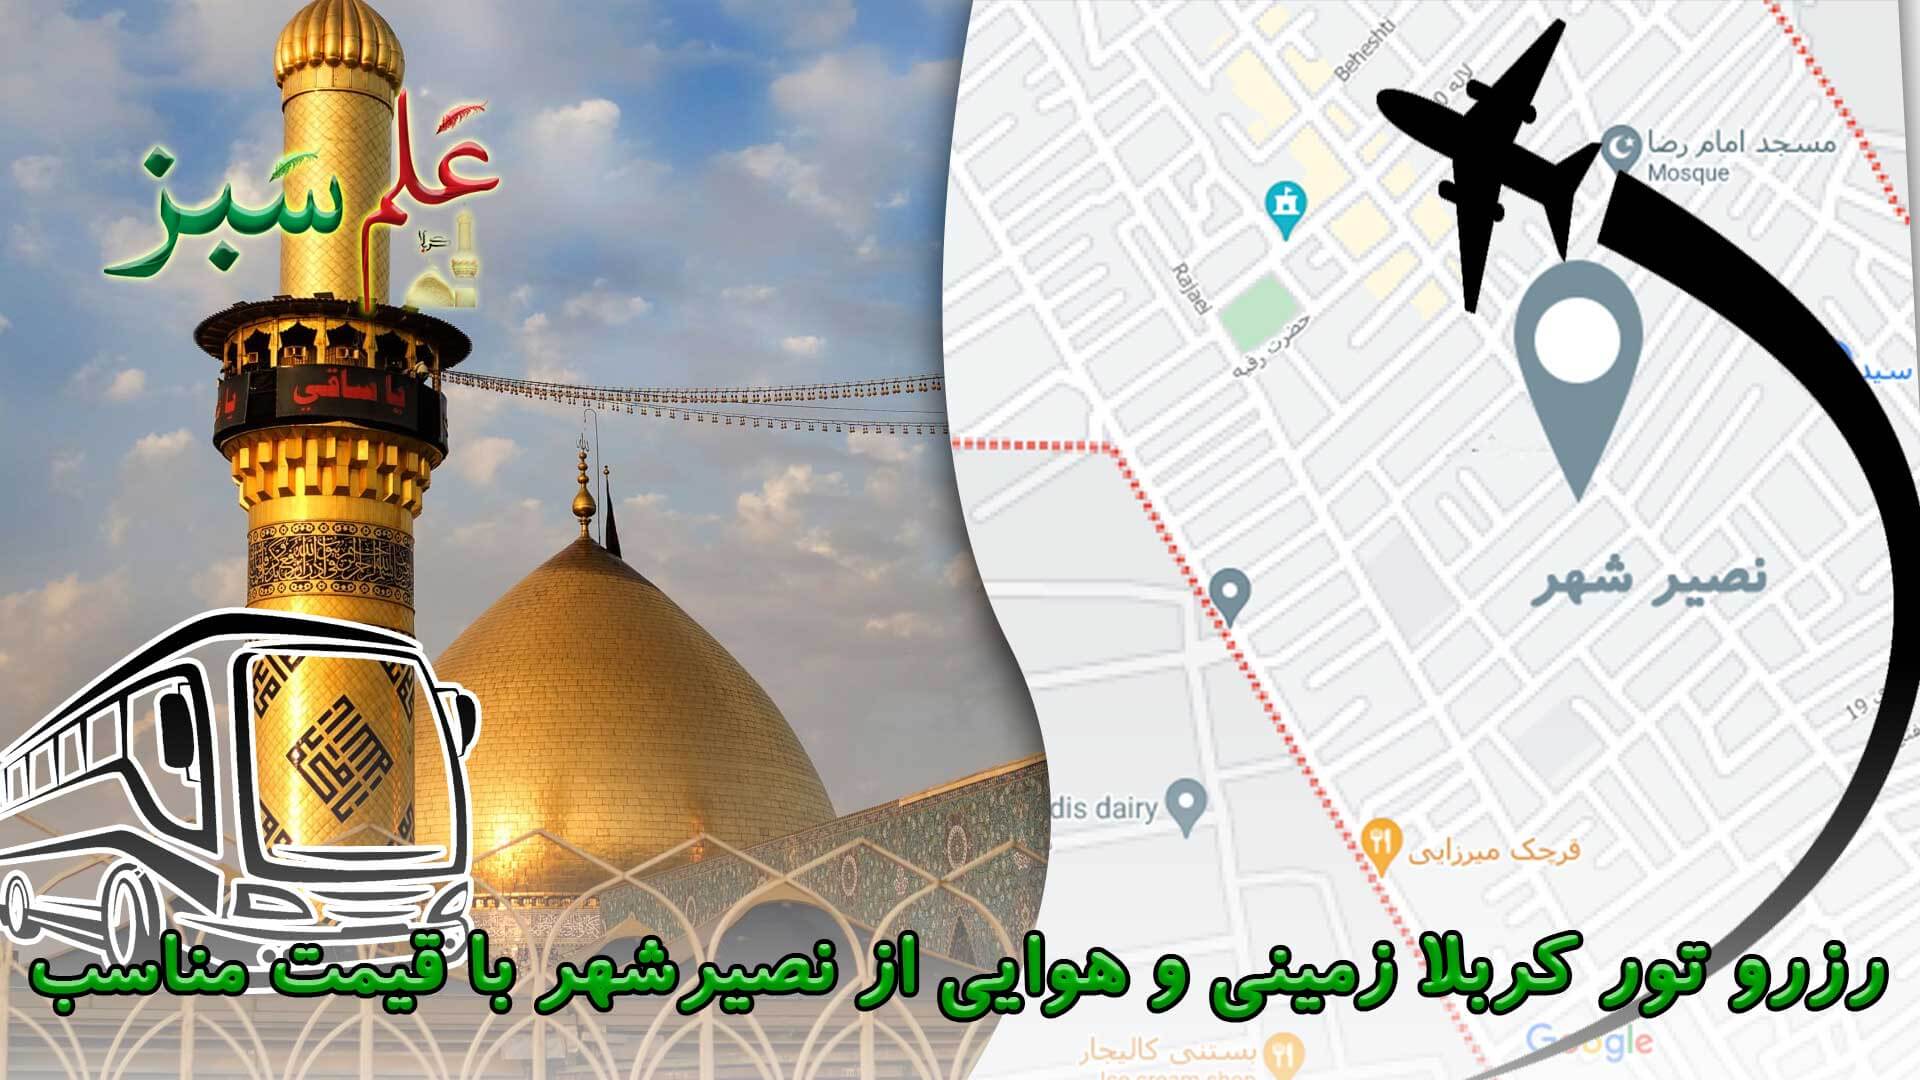 رزرو تور کربلا زمینی هوایی از نصیرشهر با قیمت مناسب